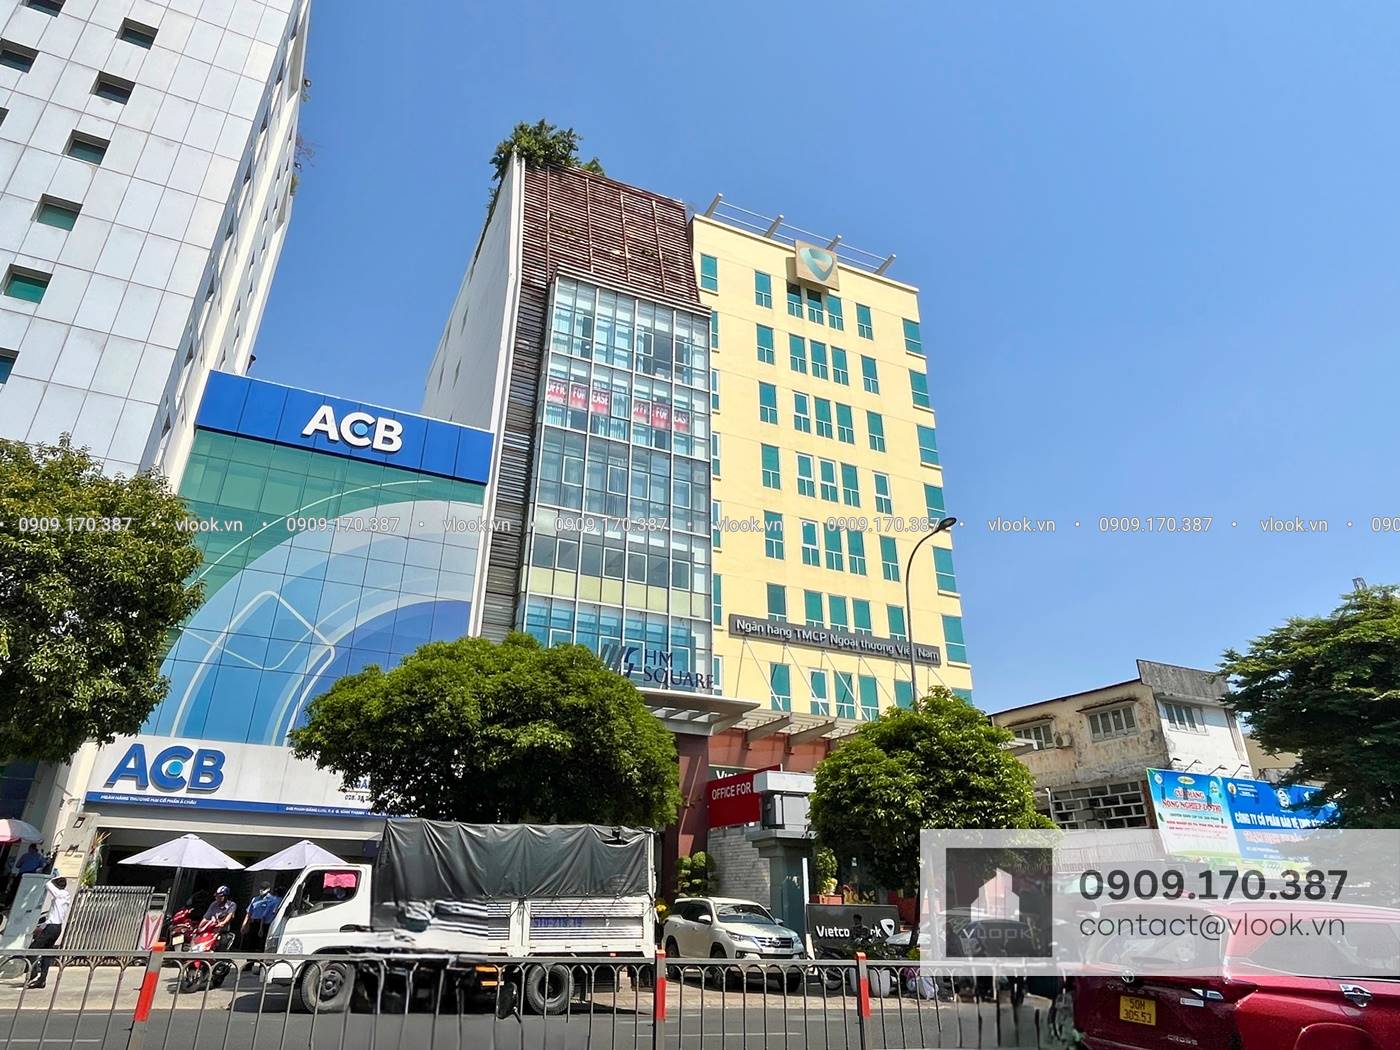 Cao ốc cho thuê văn phòng HM Square, Phan Đăng Lưu, Quận Bình Thạnh, TPHCM - vlook.vn